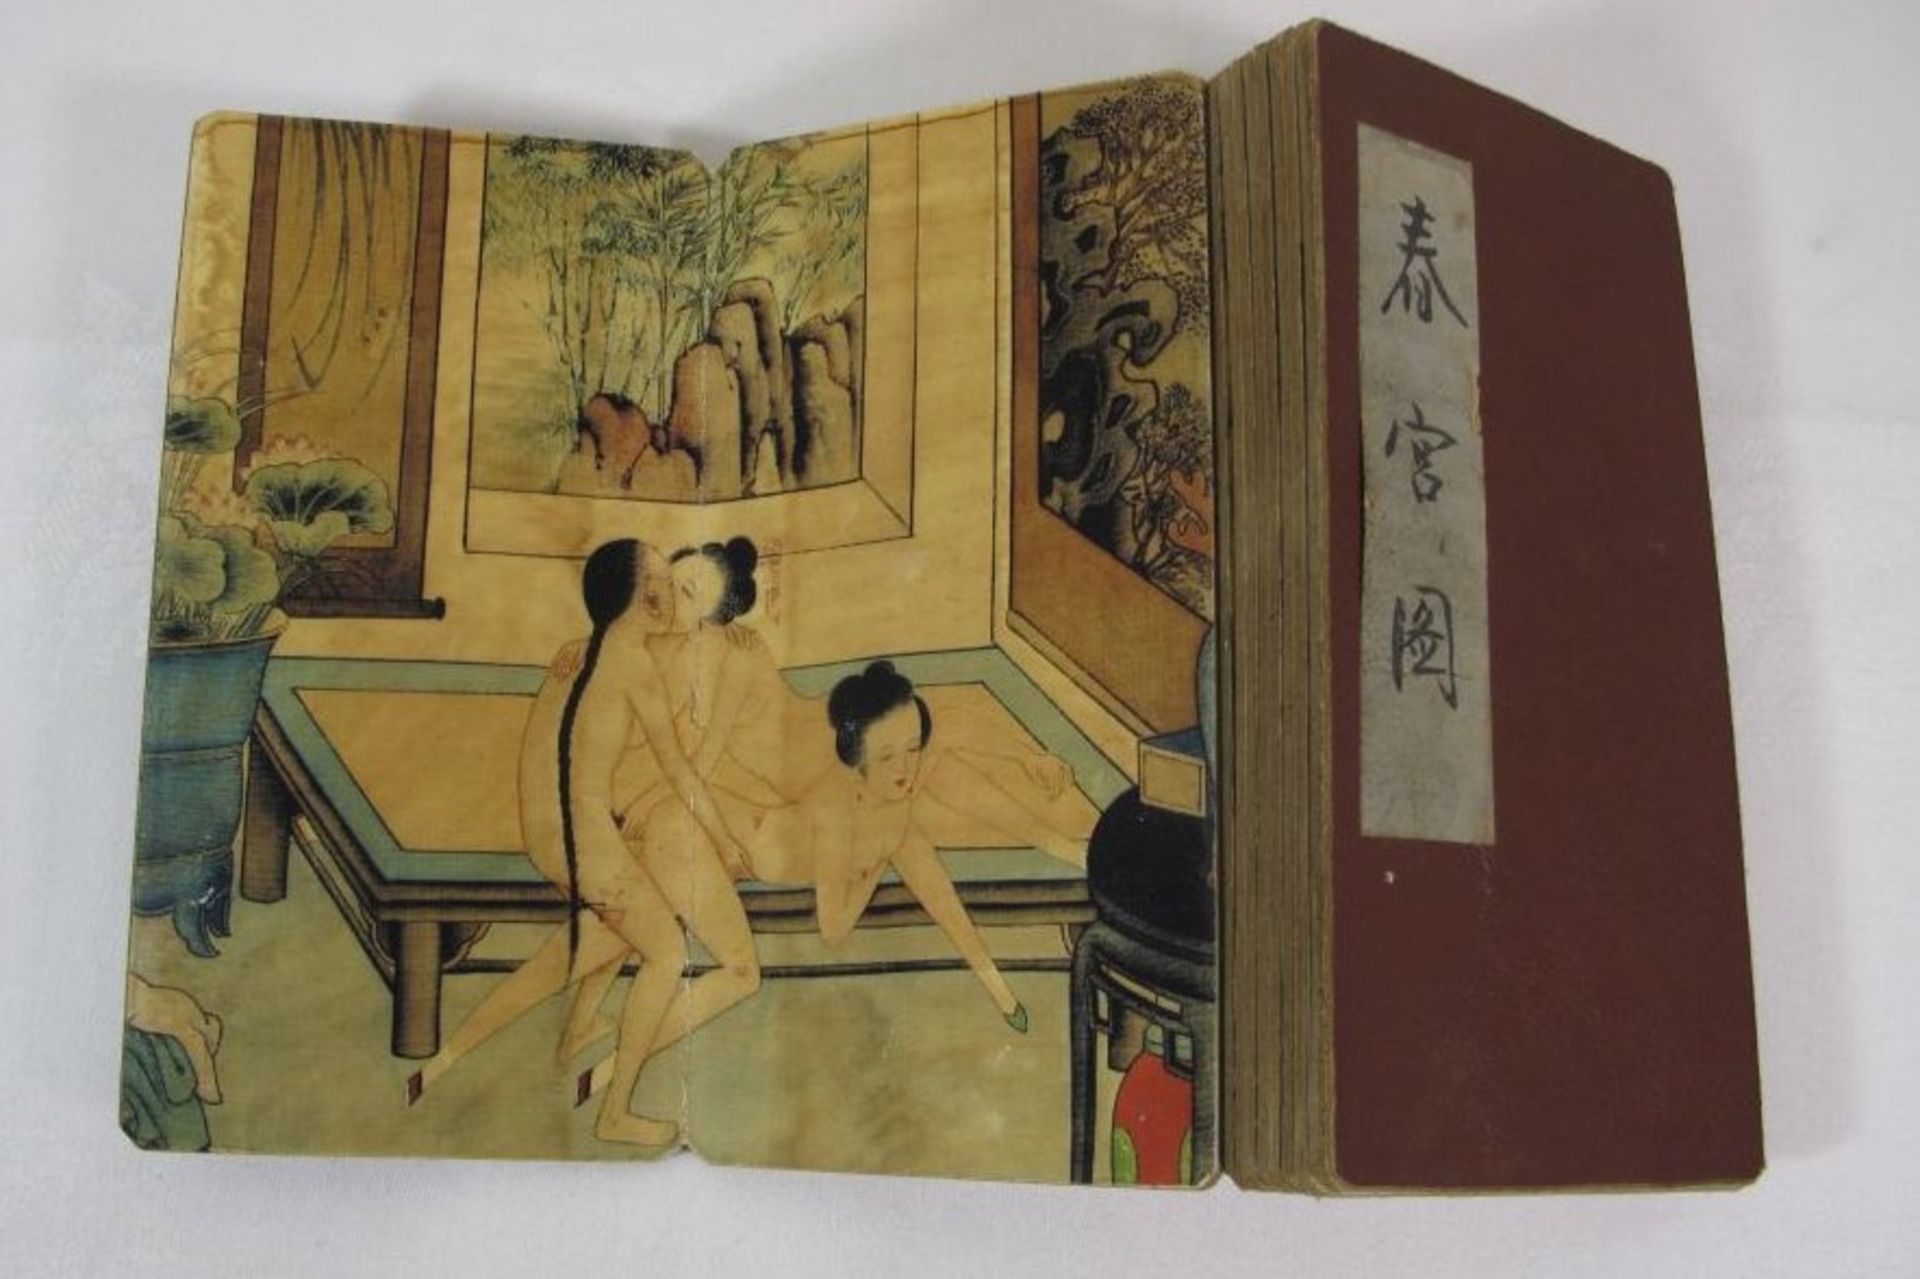 Faltbuch mit erotischen Darstellungen, China, alter ? - Bild 2 aus 2